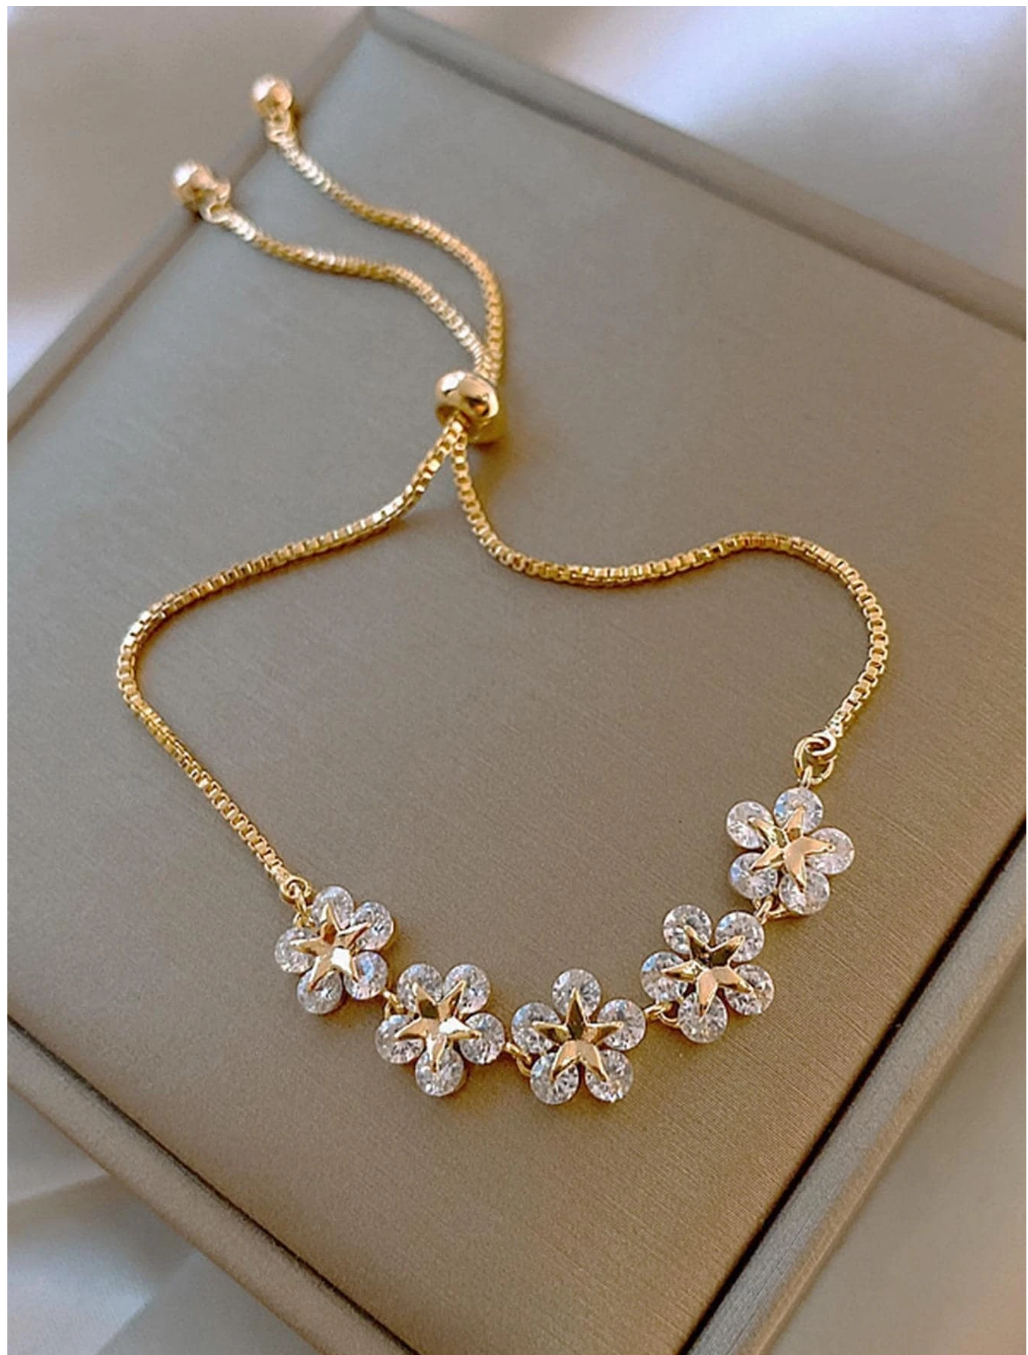 Sparkling Elegance: Single Piece Cubic Zirconia Adjustable Bracelet for Effortless Glamour!